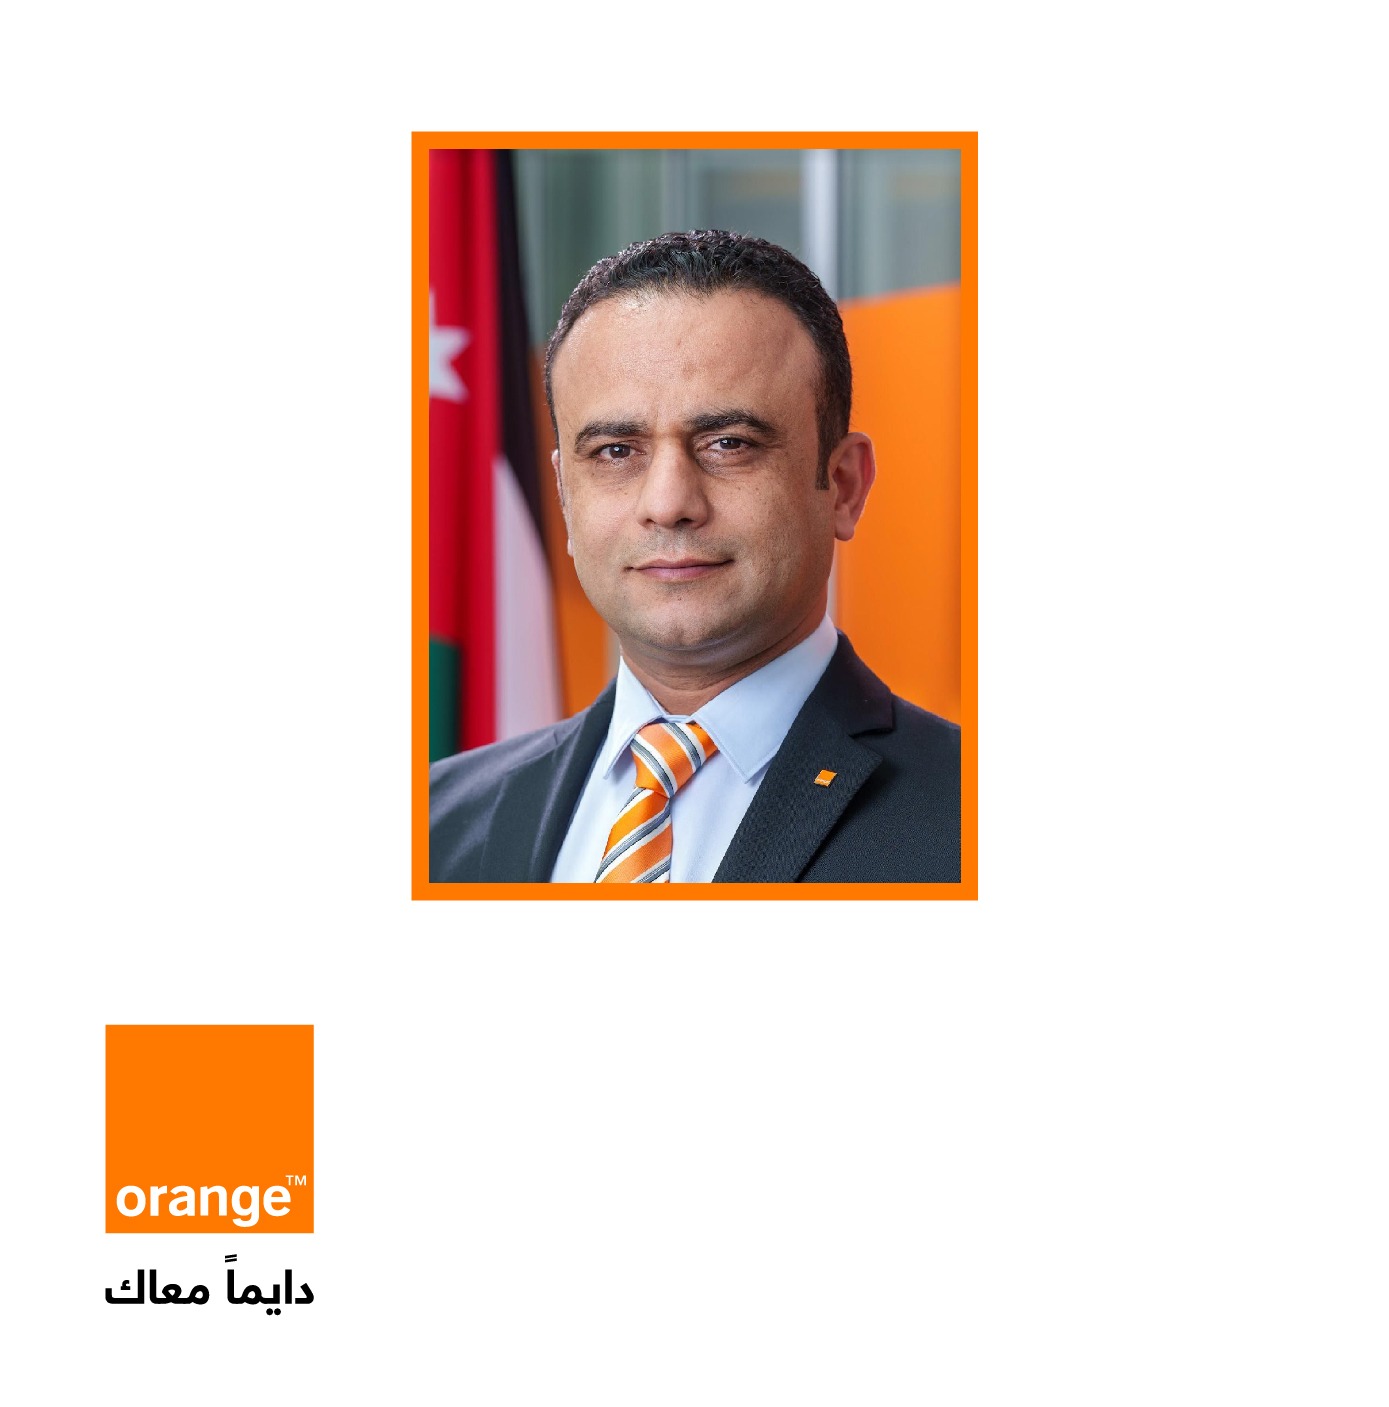 محمد أبو الغنم، المدير التنفيذي للمالية المعيّن حديثاً في أورنج الأردن: خبرة ورؤية استراتيجية | خارج المستطيل الأبيض